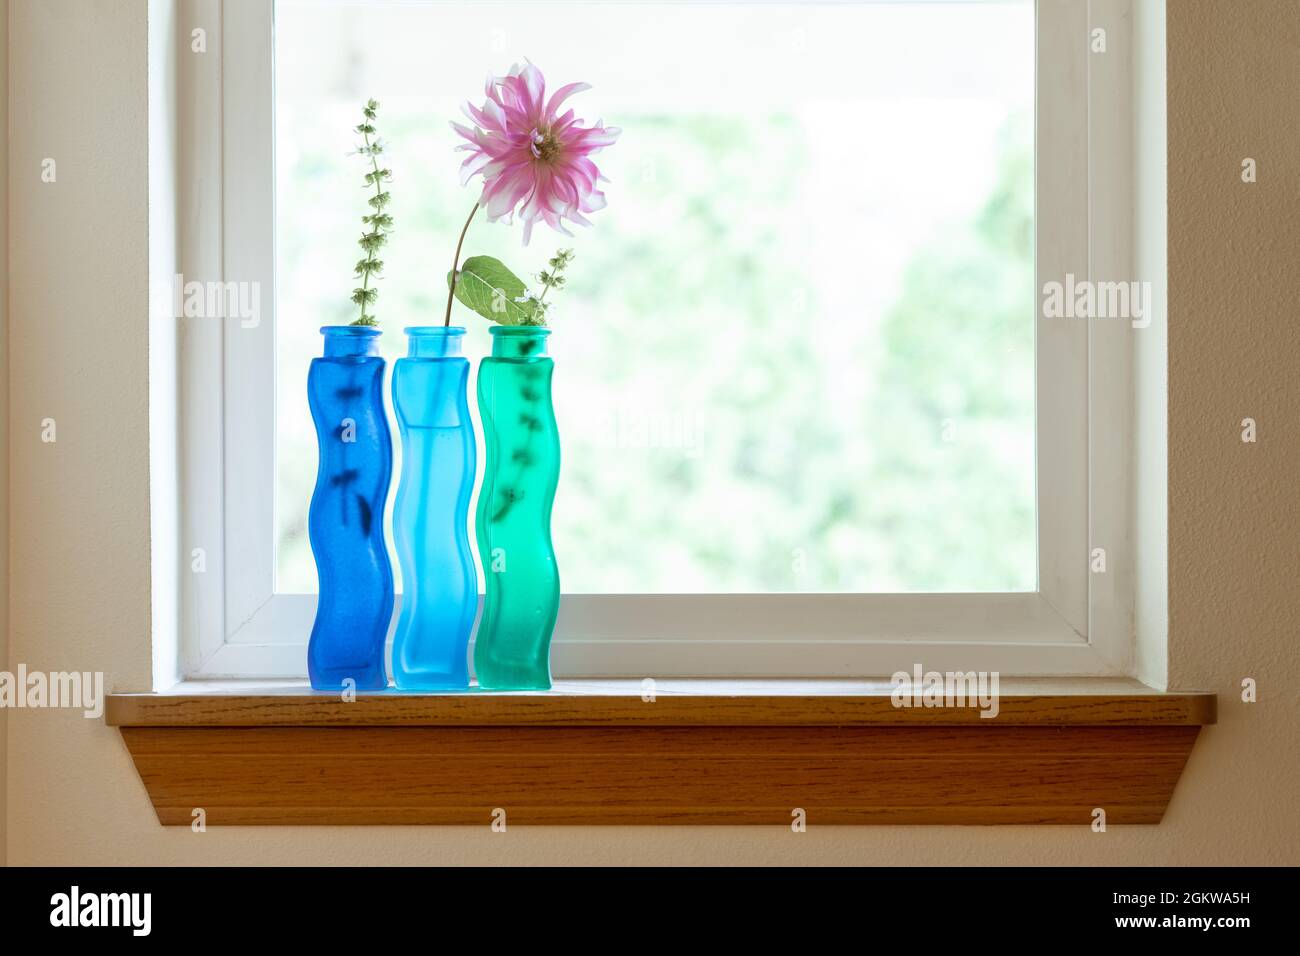 Set aus drei blauen und grünen Vasen mit Blumen auf der Fensterbank an einem hellen, sonnigen Tag Stockfoto